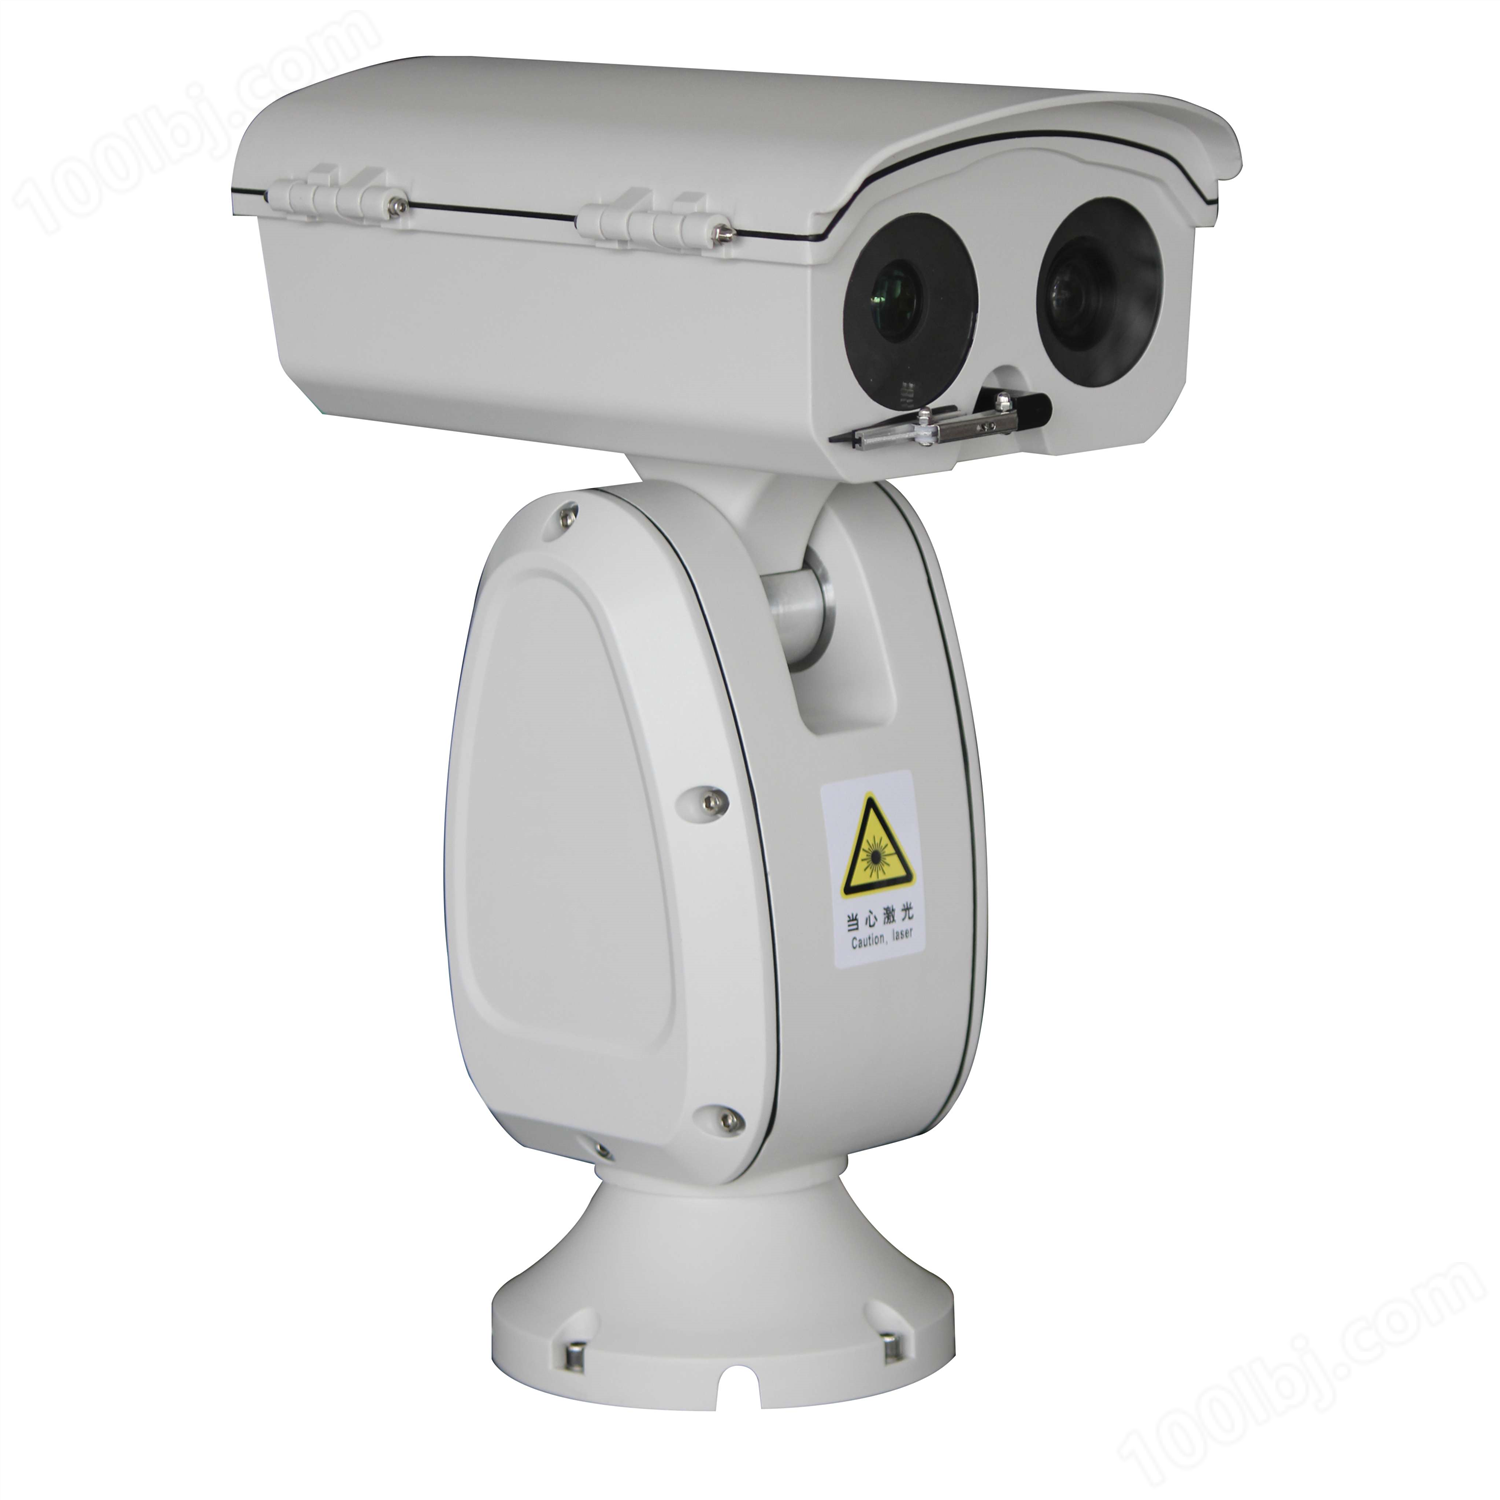 1~5公里激光云台监控摄像机,可选多种不同规格高清监控一体机机芯,同时也可集成为热成像云台监控摄像机